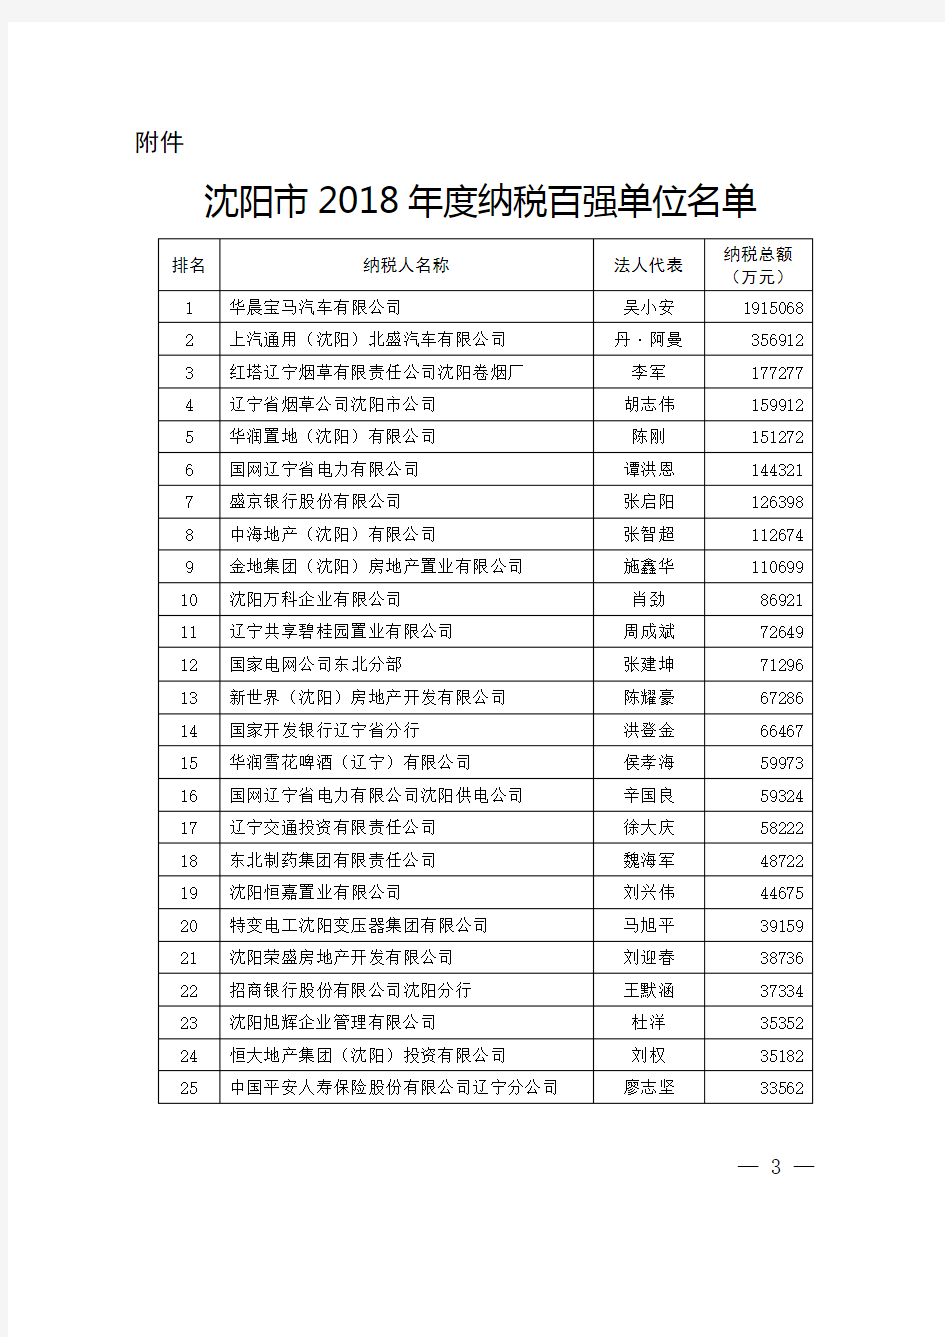 沈阳市2018年度纳税百强单位名单